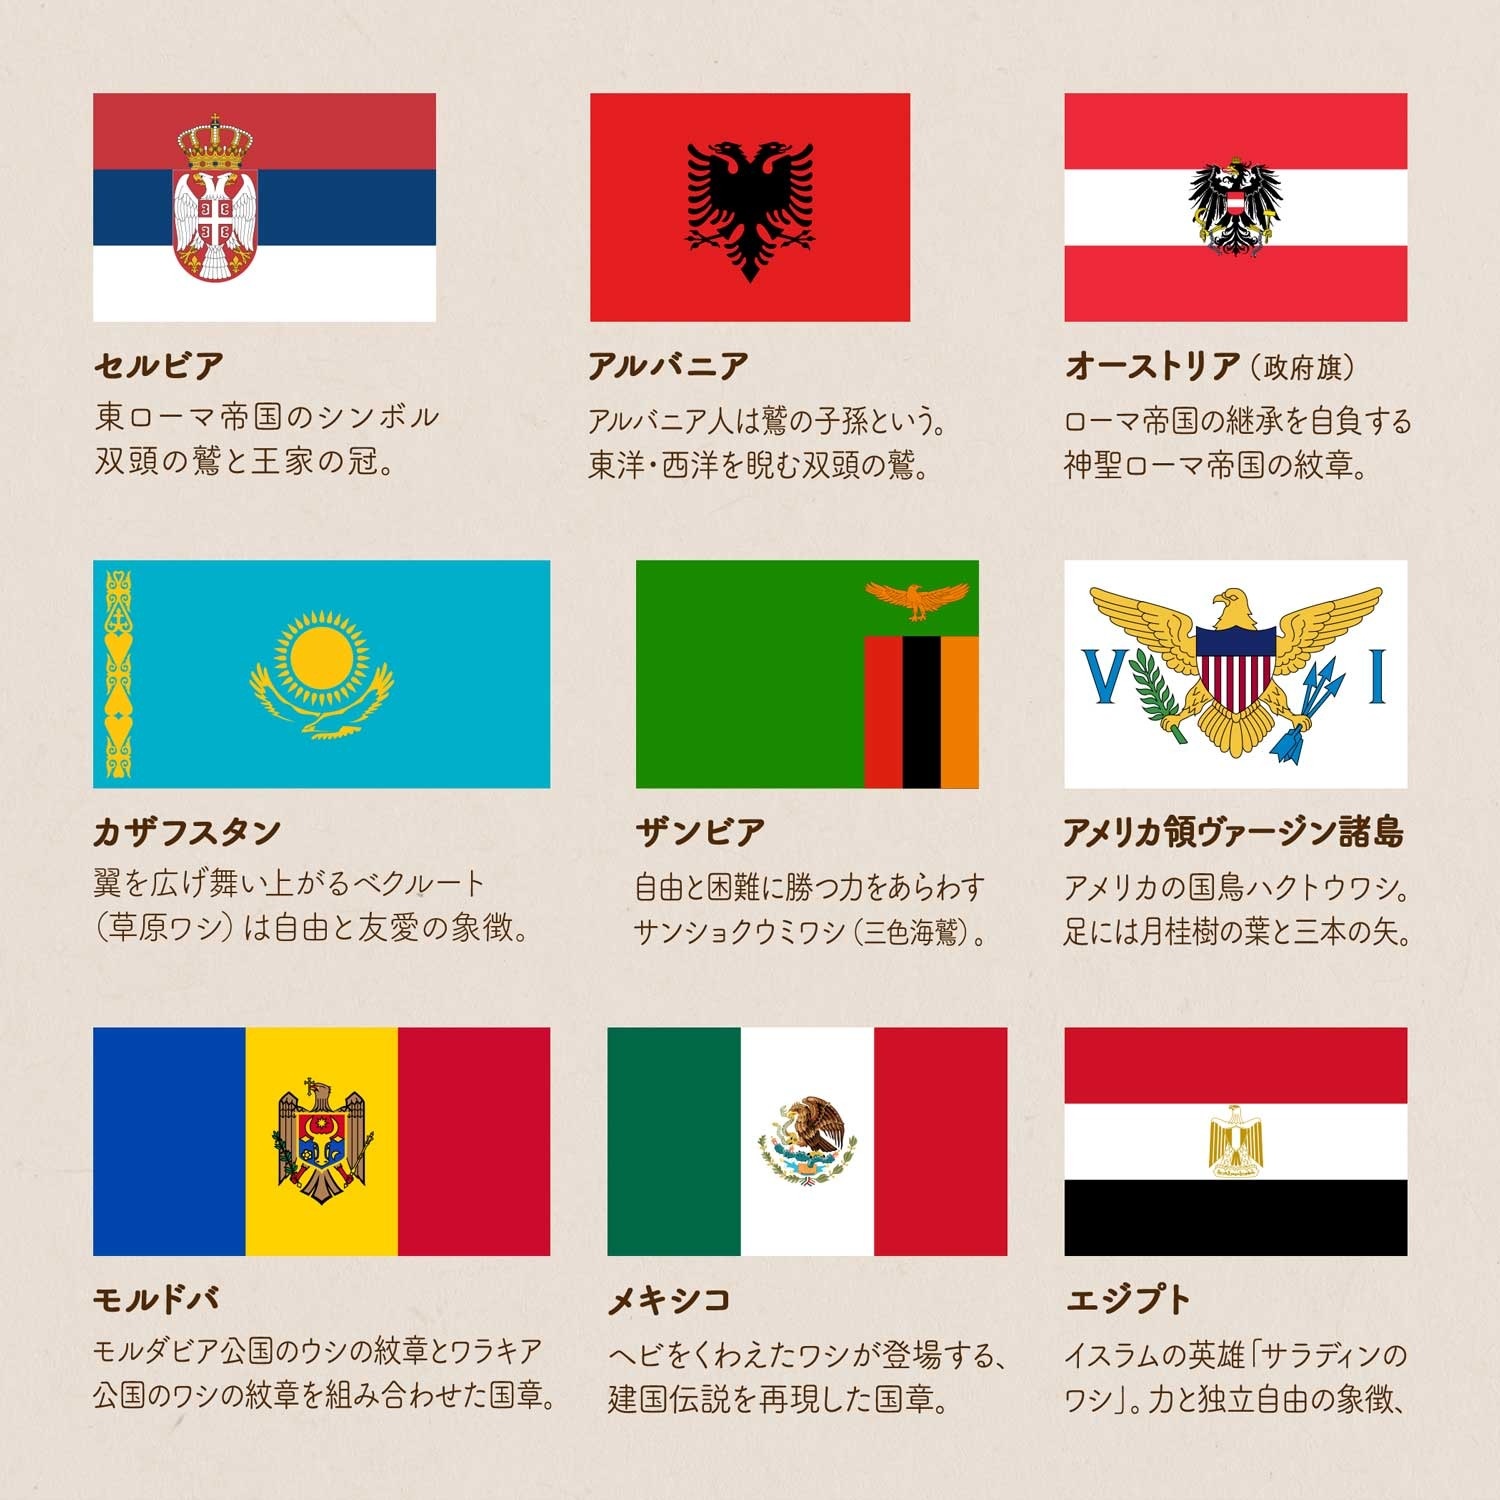 世界の国旗 鳥や動物はどんな意味 国旗のデザインを学ぼう 世界の国旗 デザインから世界を学ぼう